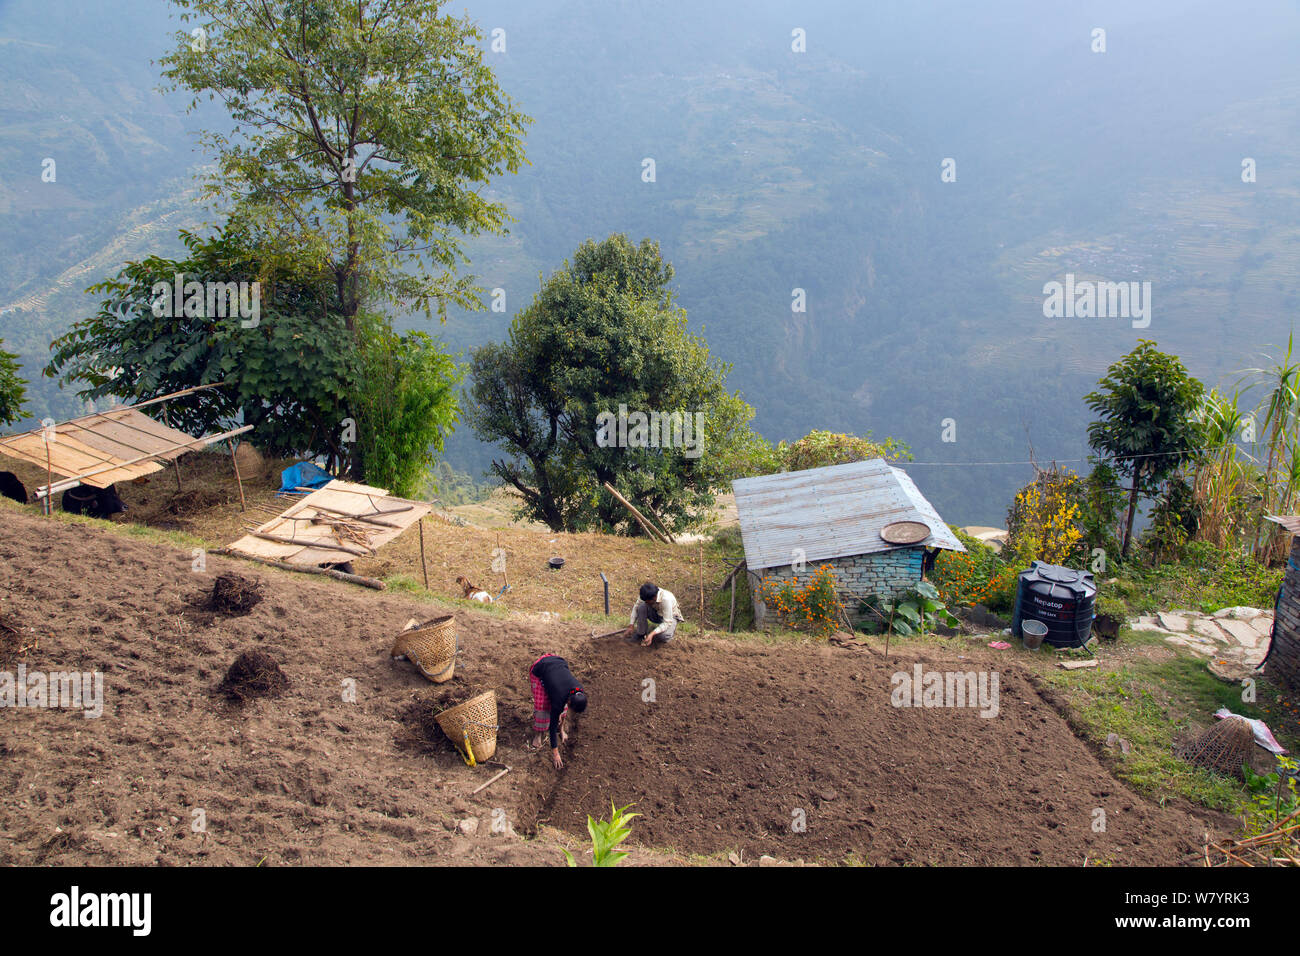 Les agriculteurs la préparation de sol après la récolte près de village de montagne de Ghandruk, Modi Khola, vallée de l'Himalaya, au Népal. Novembre 2014. Banque D'Images